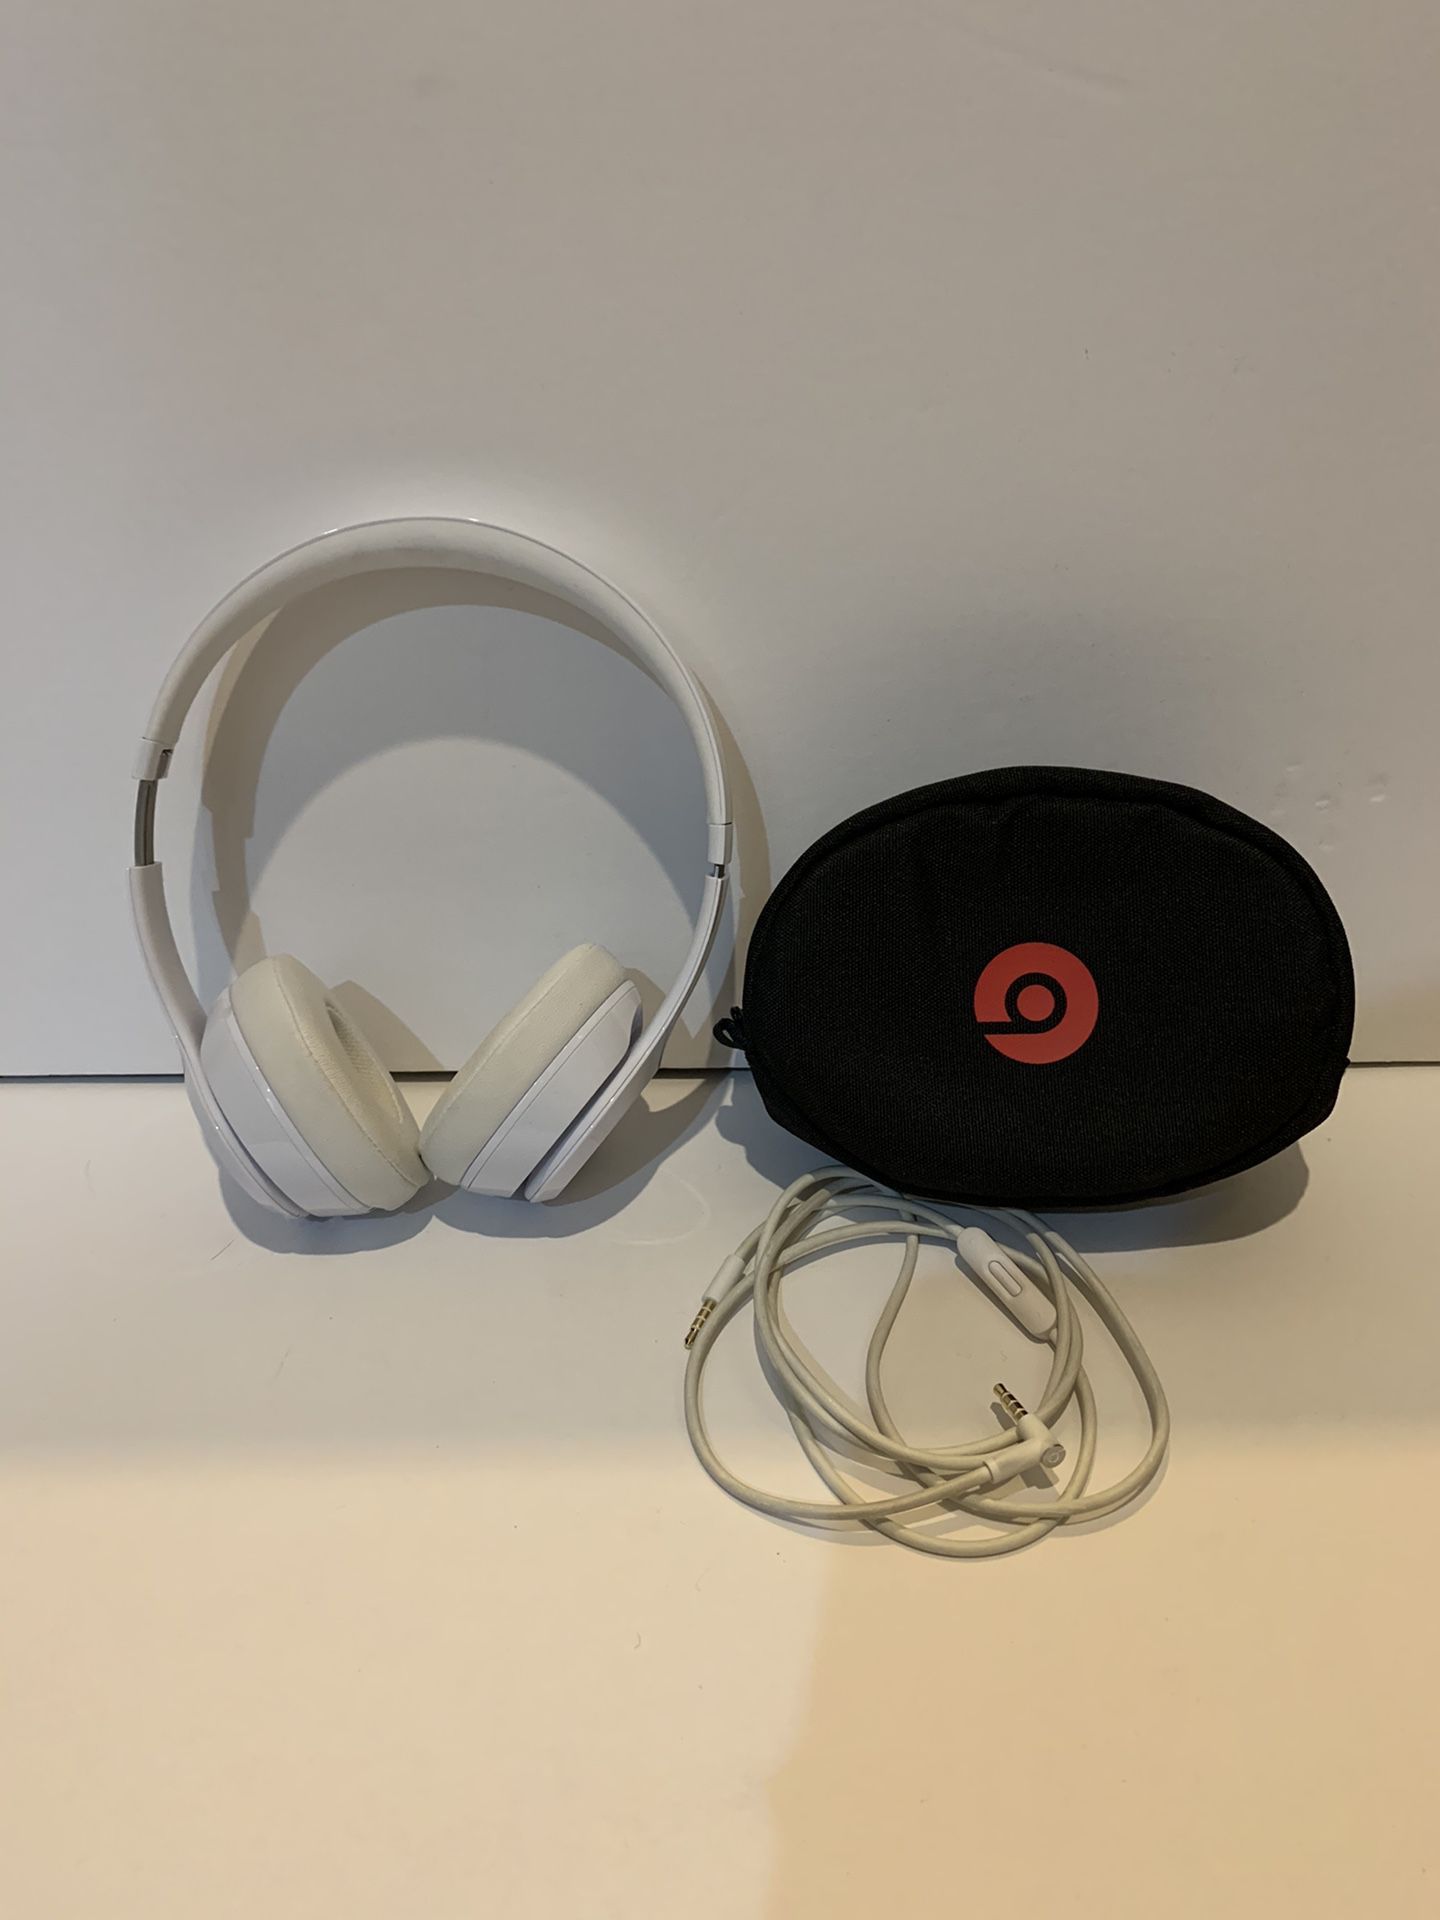 BEATS BY DRE wireless headphones